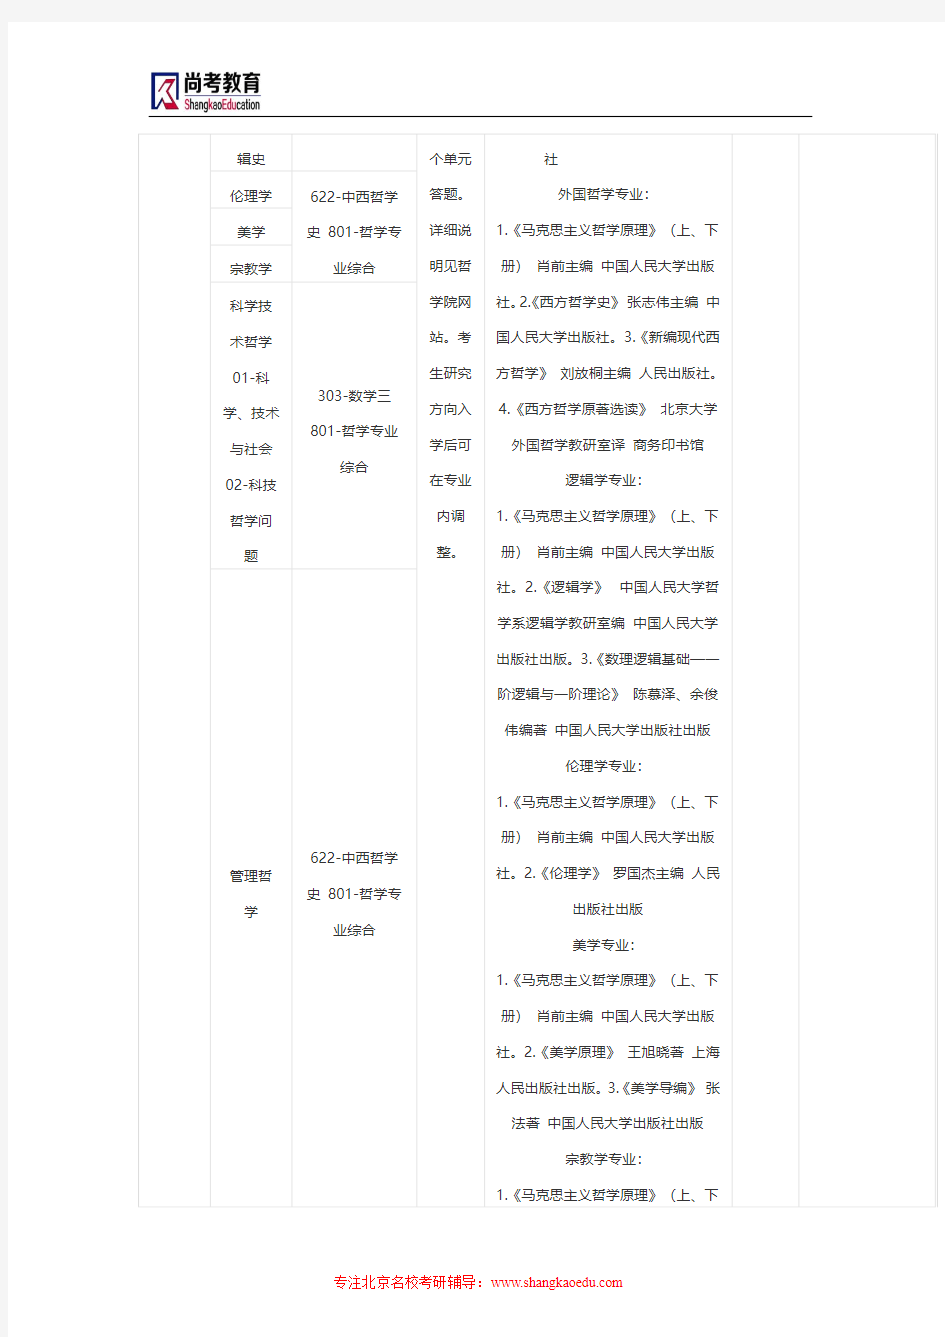 2015年中国人民大学考研参考书目及考试科目